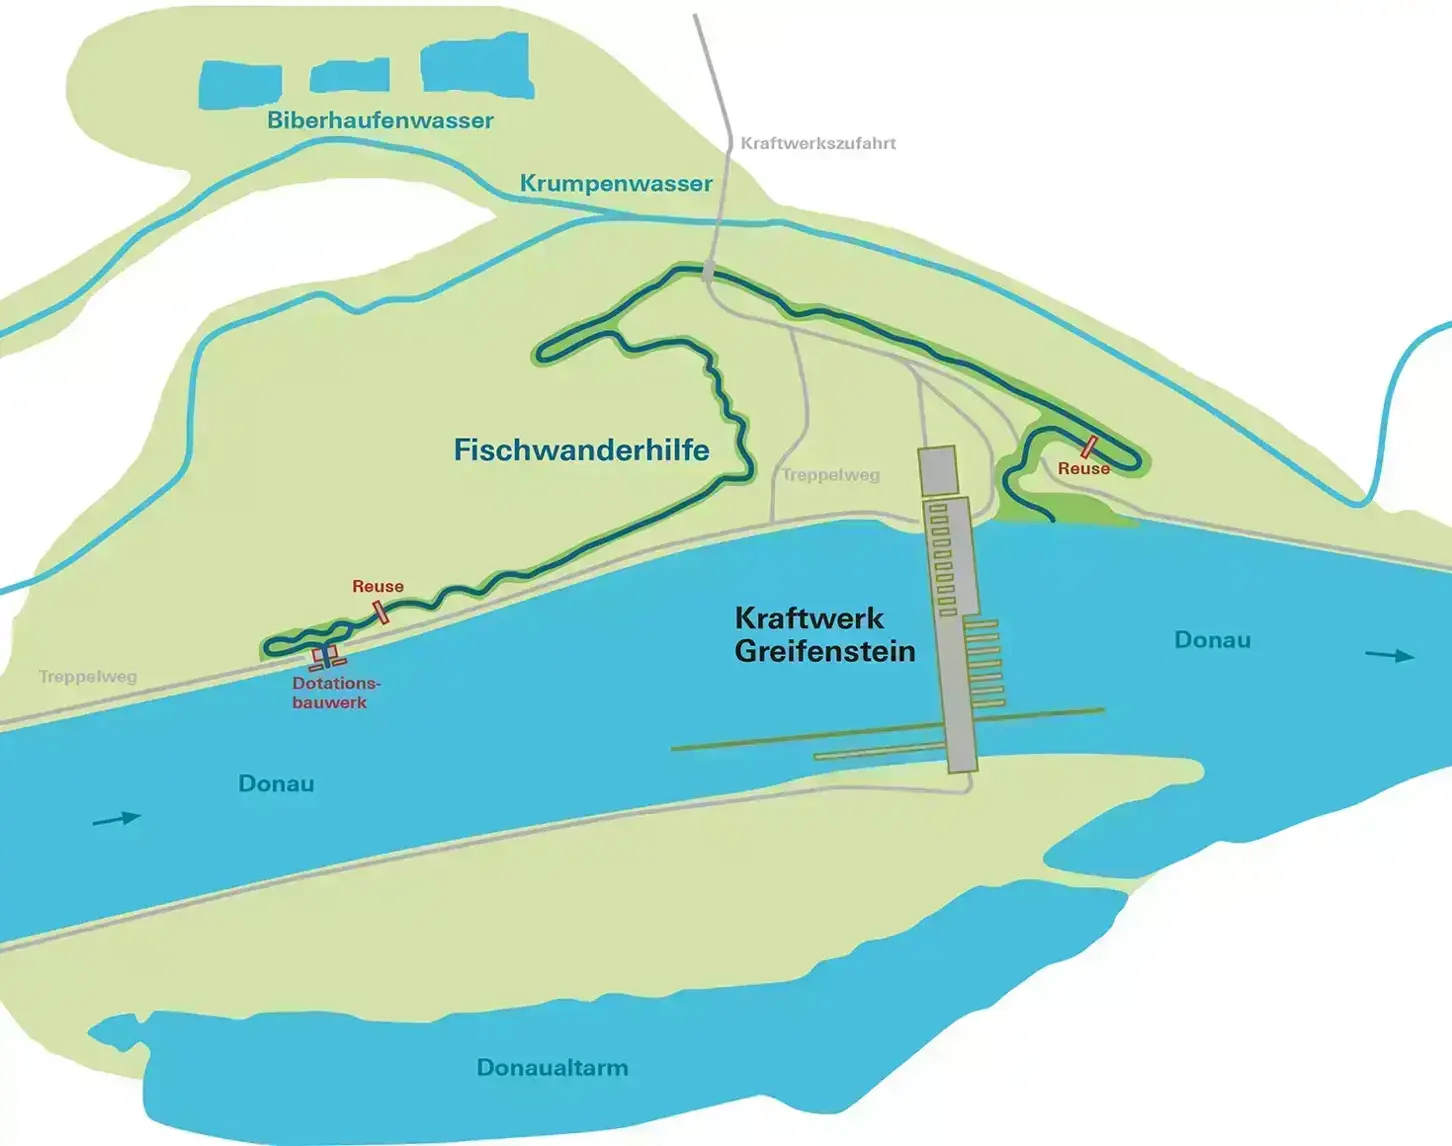 Die Karte zeigt rudimentär den Ausschnitt rund um die Fischwanderhilfe beim Kraftwerk Greifenstein.